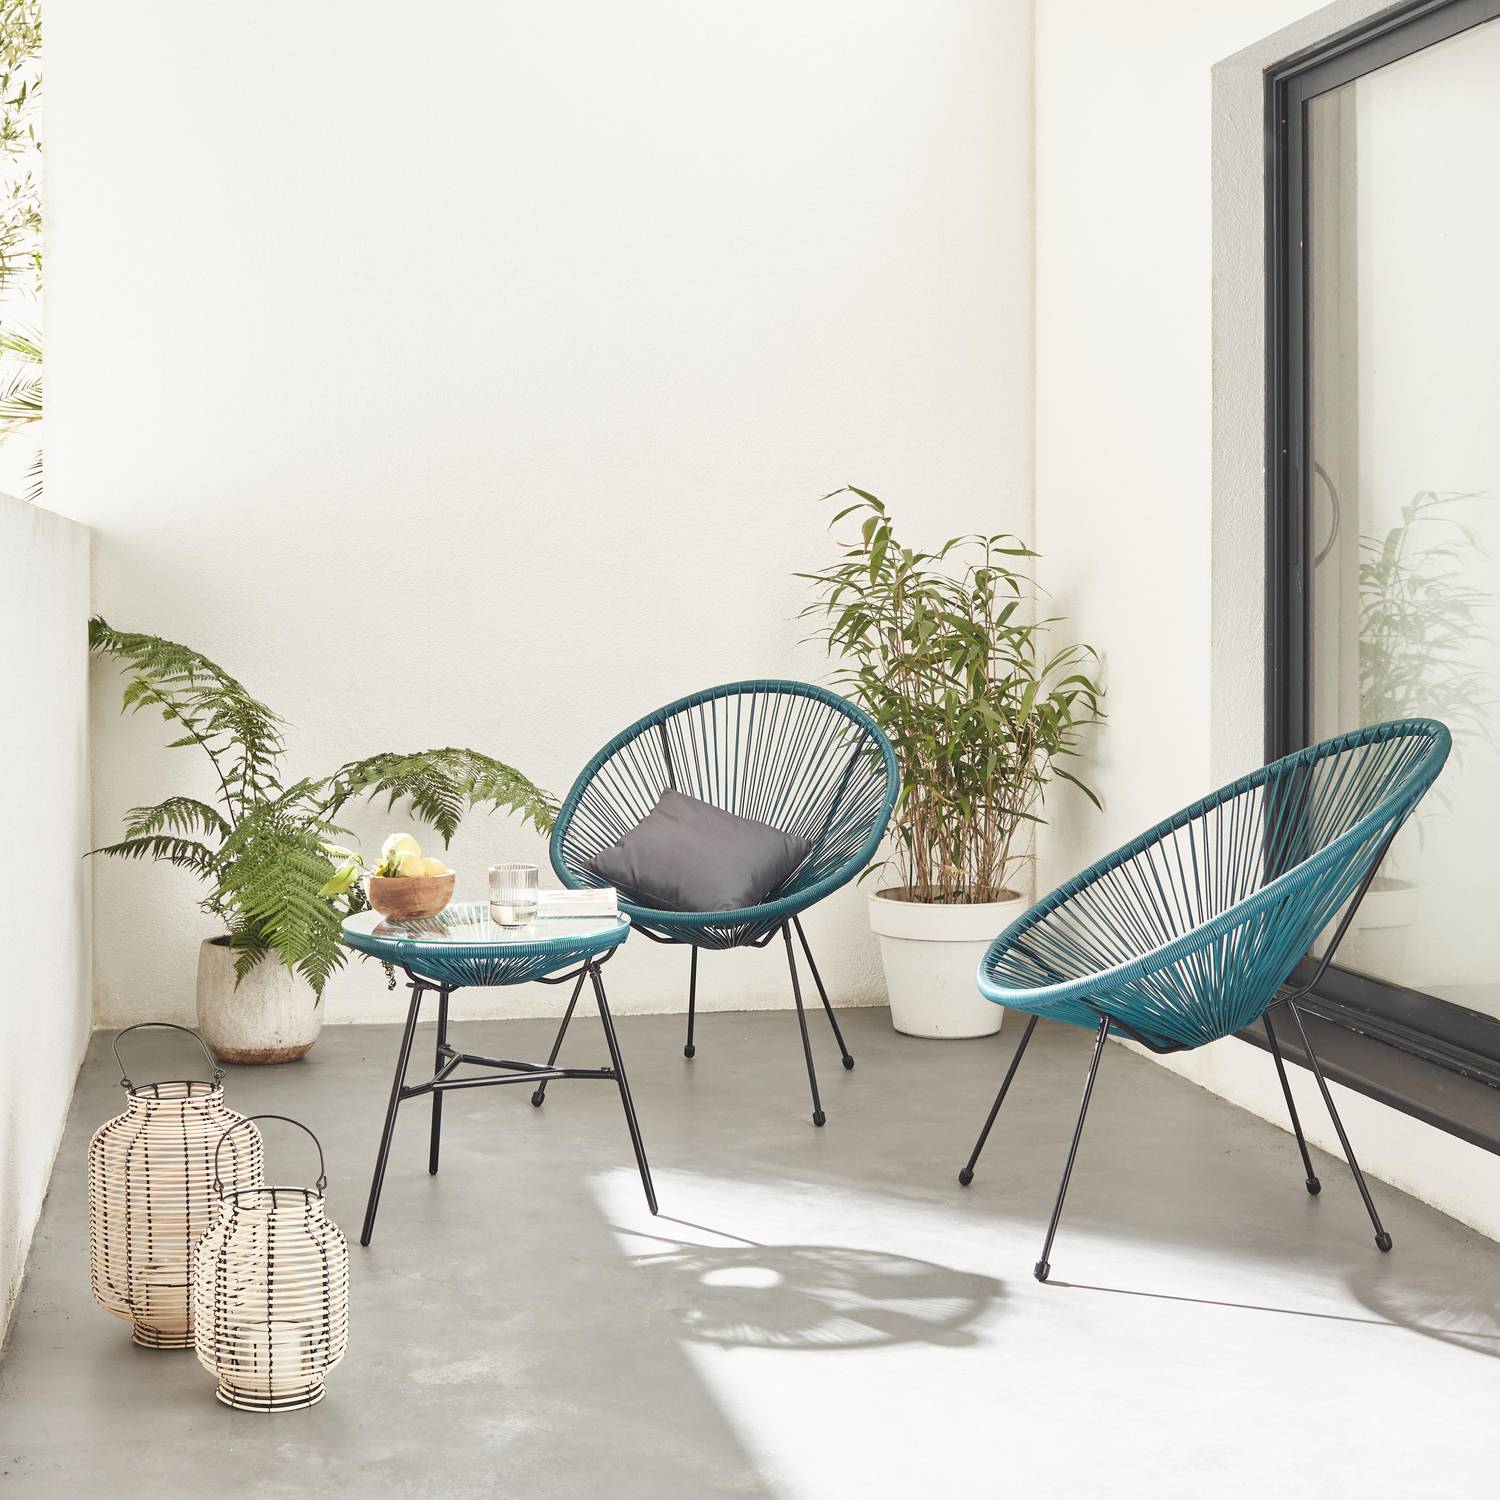 Set mit 2 eiförmigen ACAPULCO-Sesseln mit Beistelltisch - entenblau- 4-beinige Sessel im Retro-Design mit Couchtisch, Kunststoffschnur Photo1